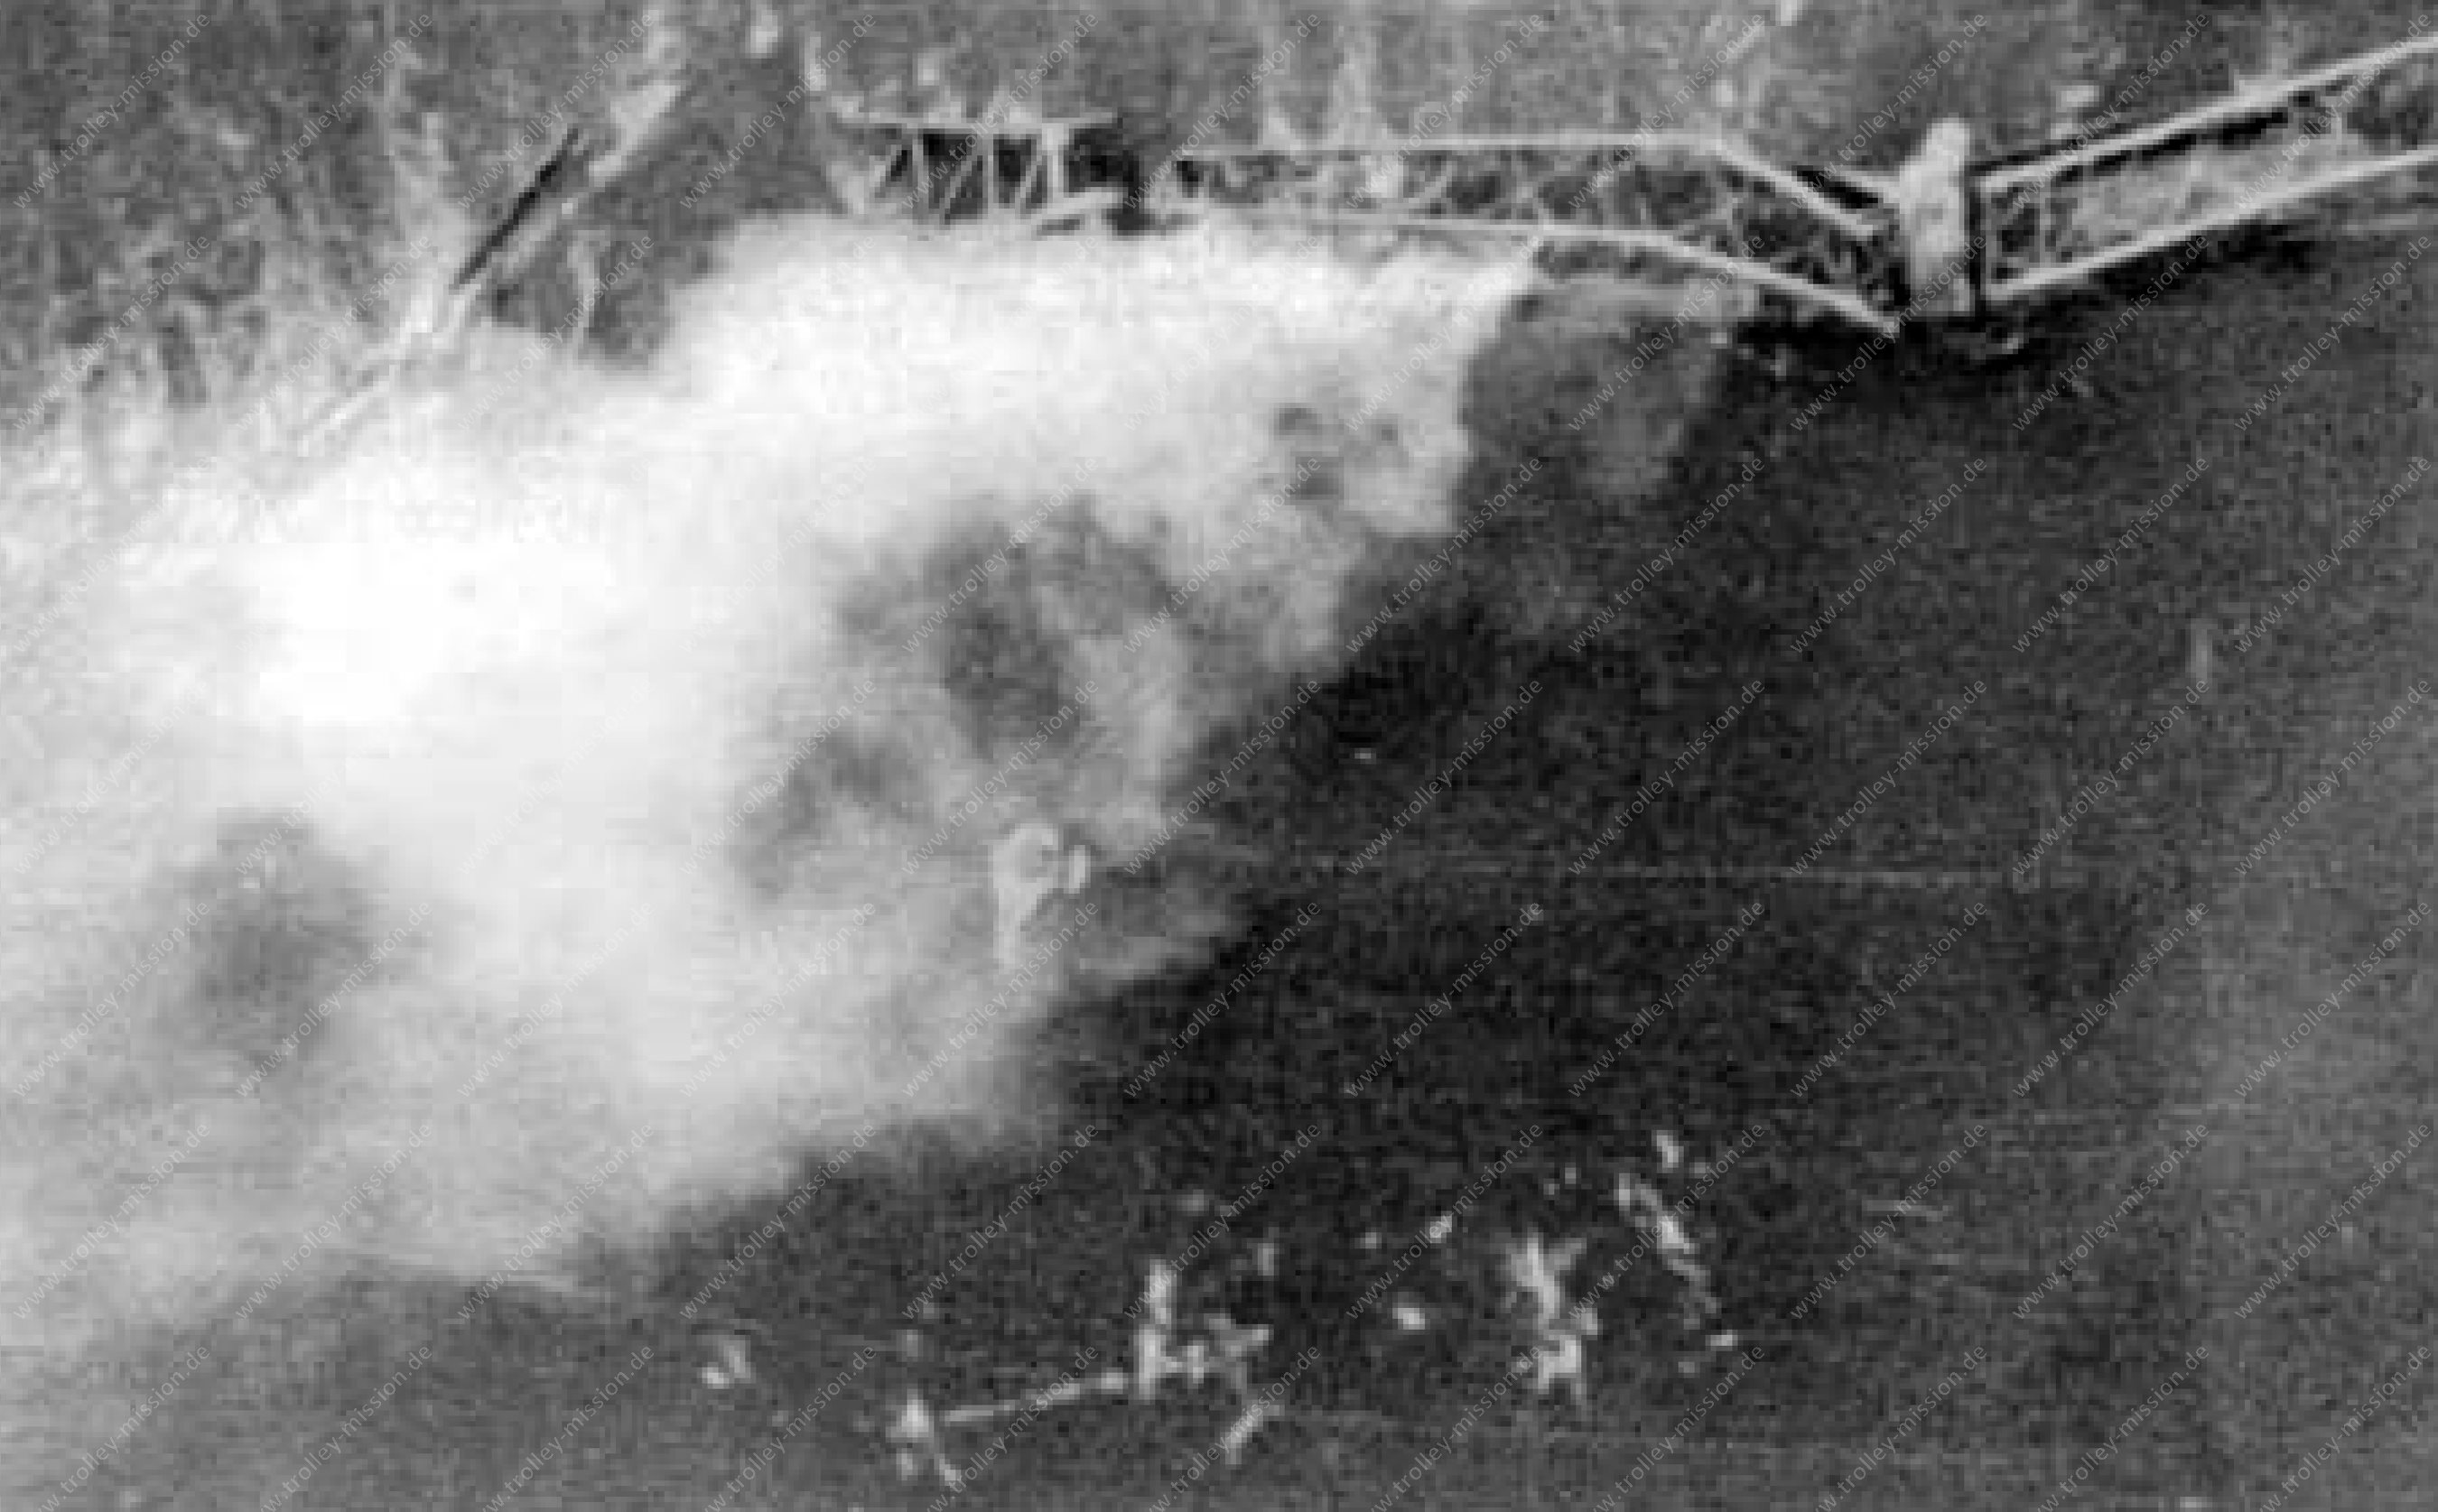 Flugzeugabsturz während der Trolley Mission bei Neuwied an der Urmitzer Eisenbahnbrücke